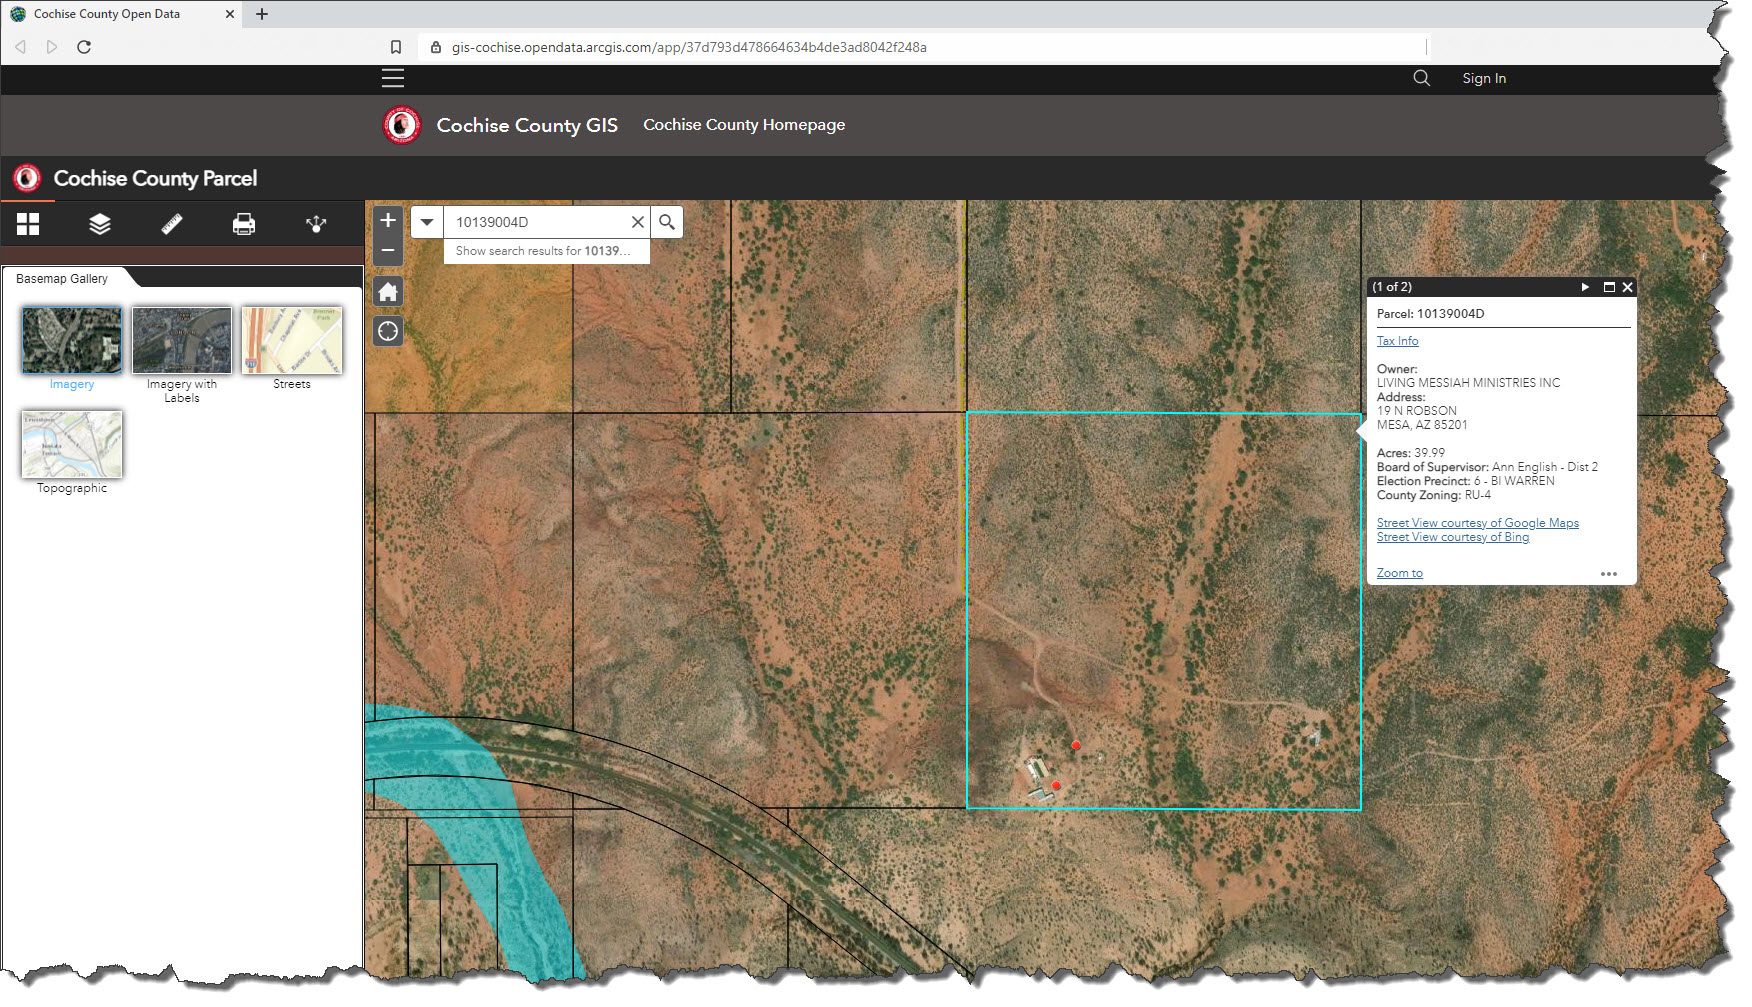 Cochise County GIS Parcel # 10139004D